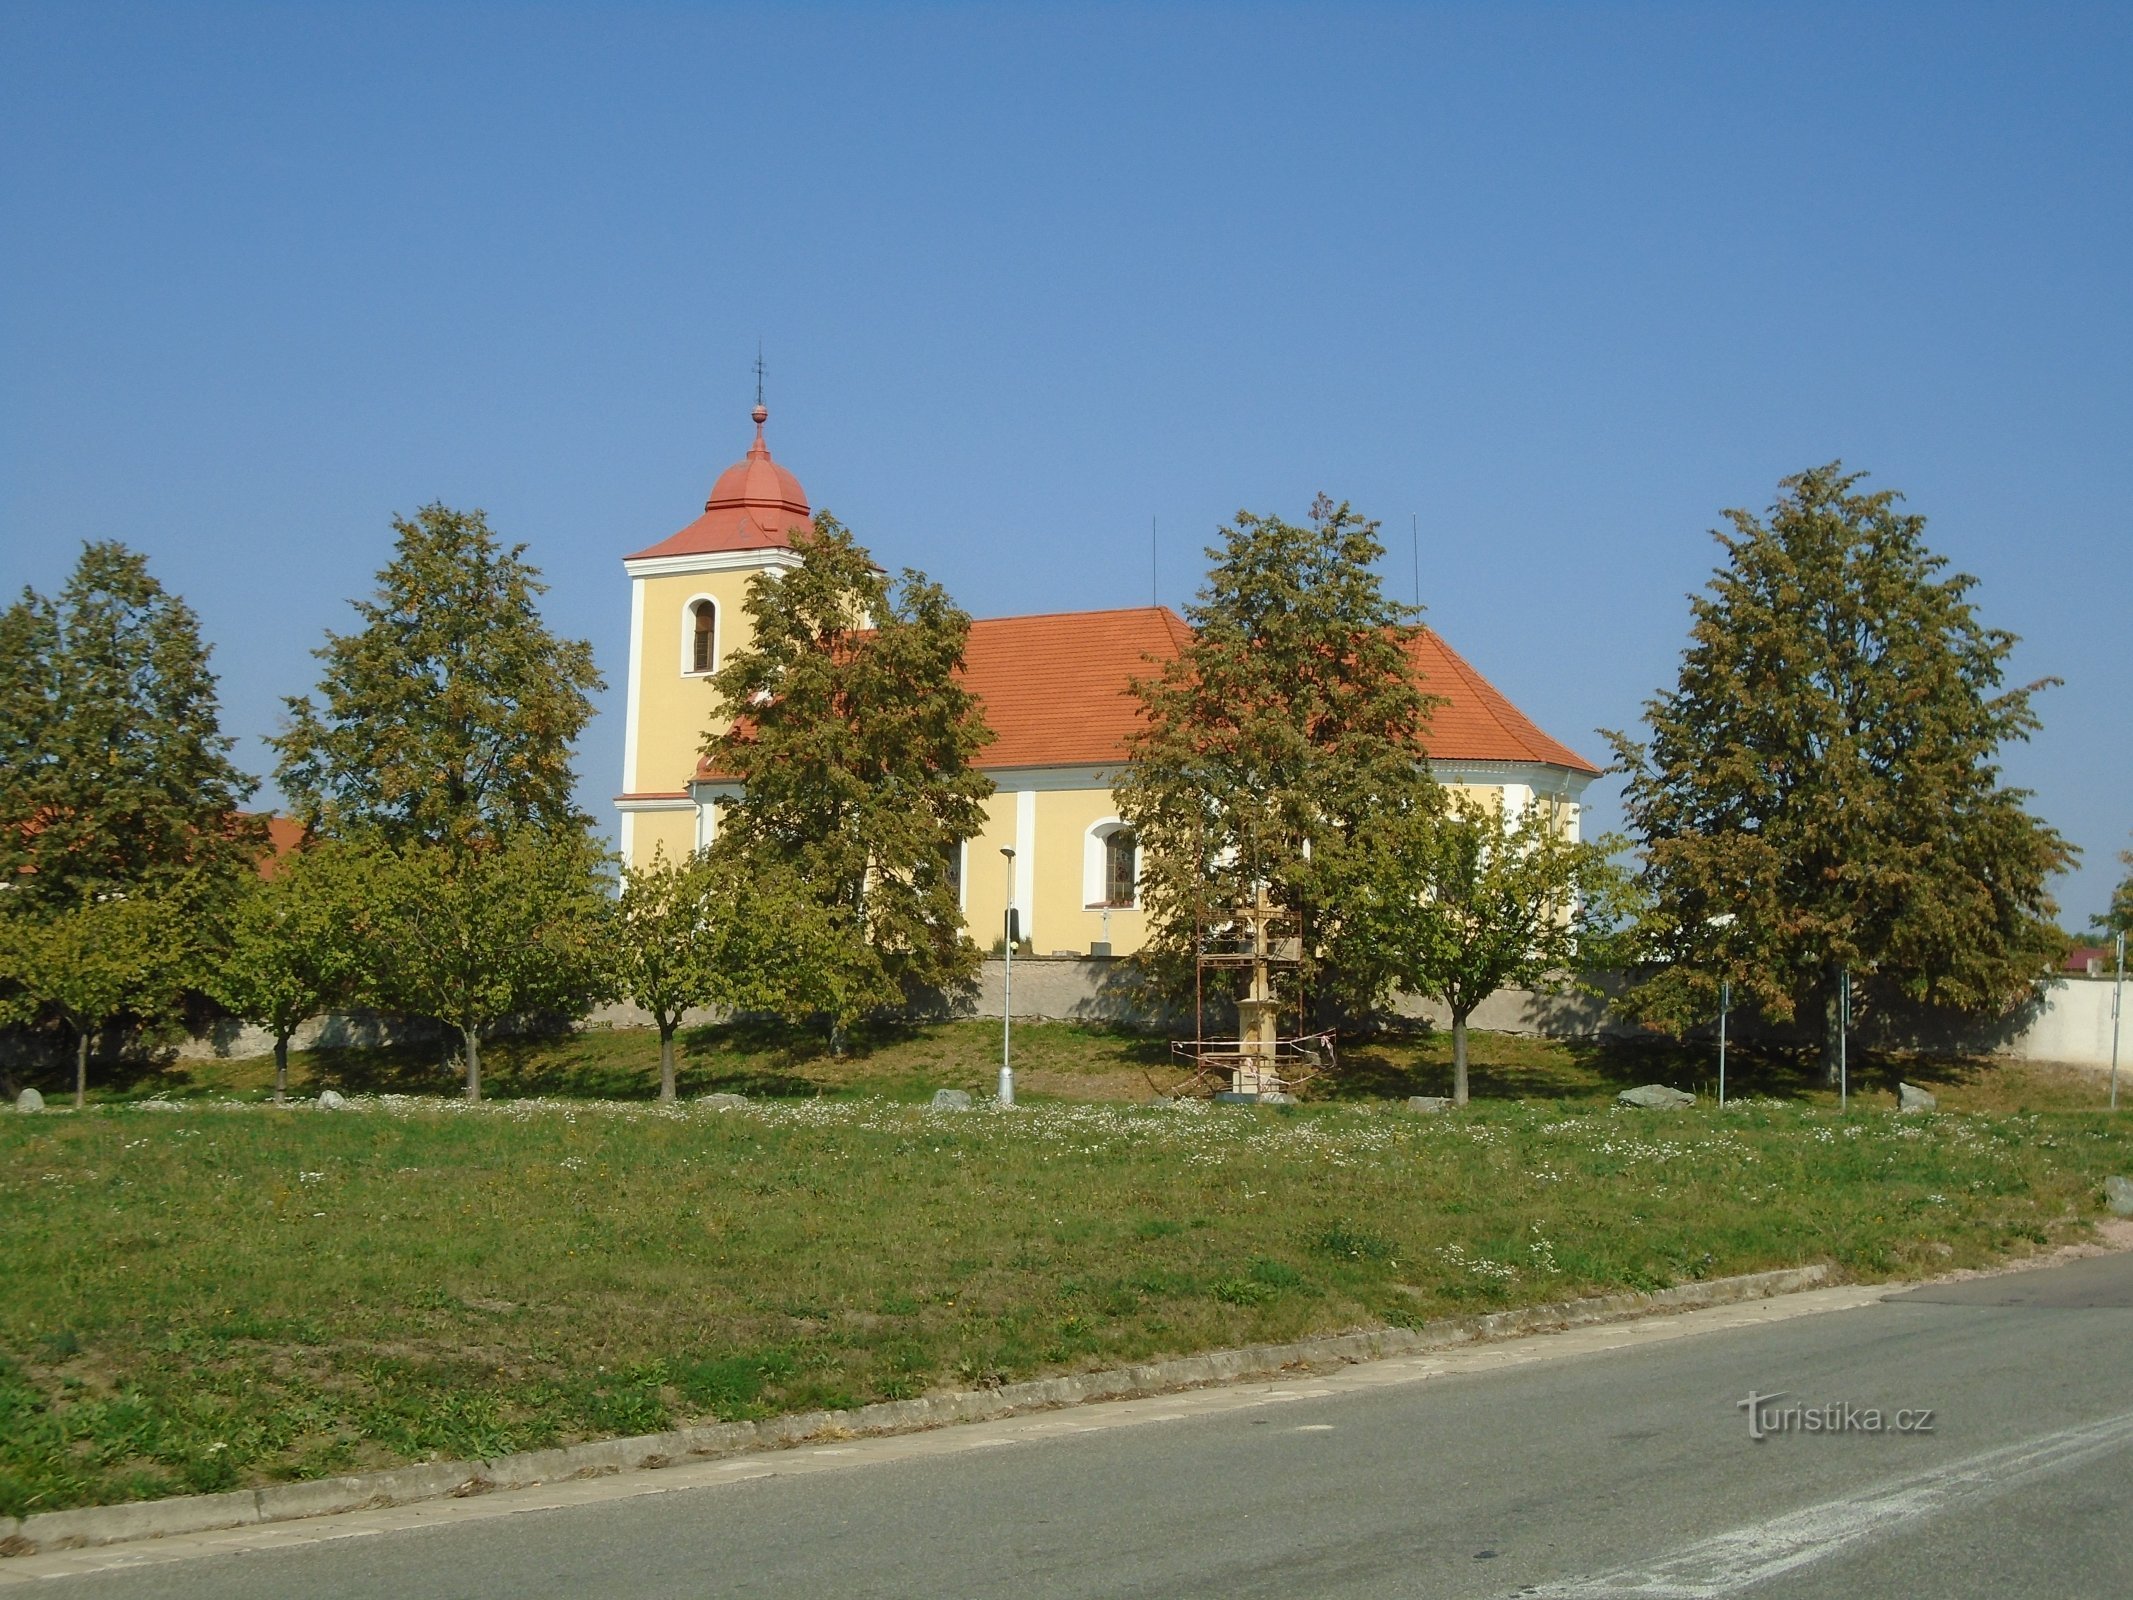 crkva sv. Jiří (Býšť)